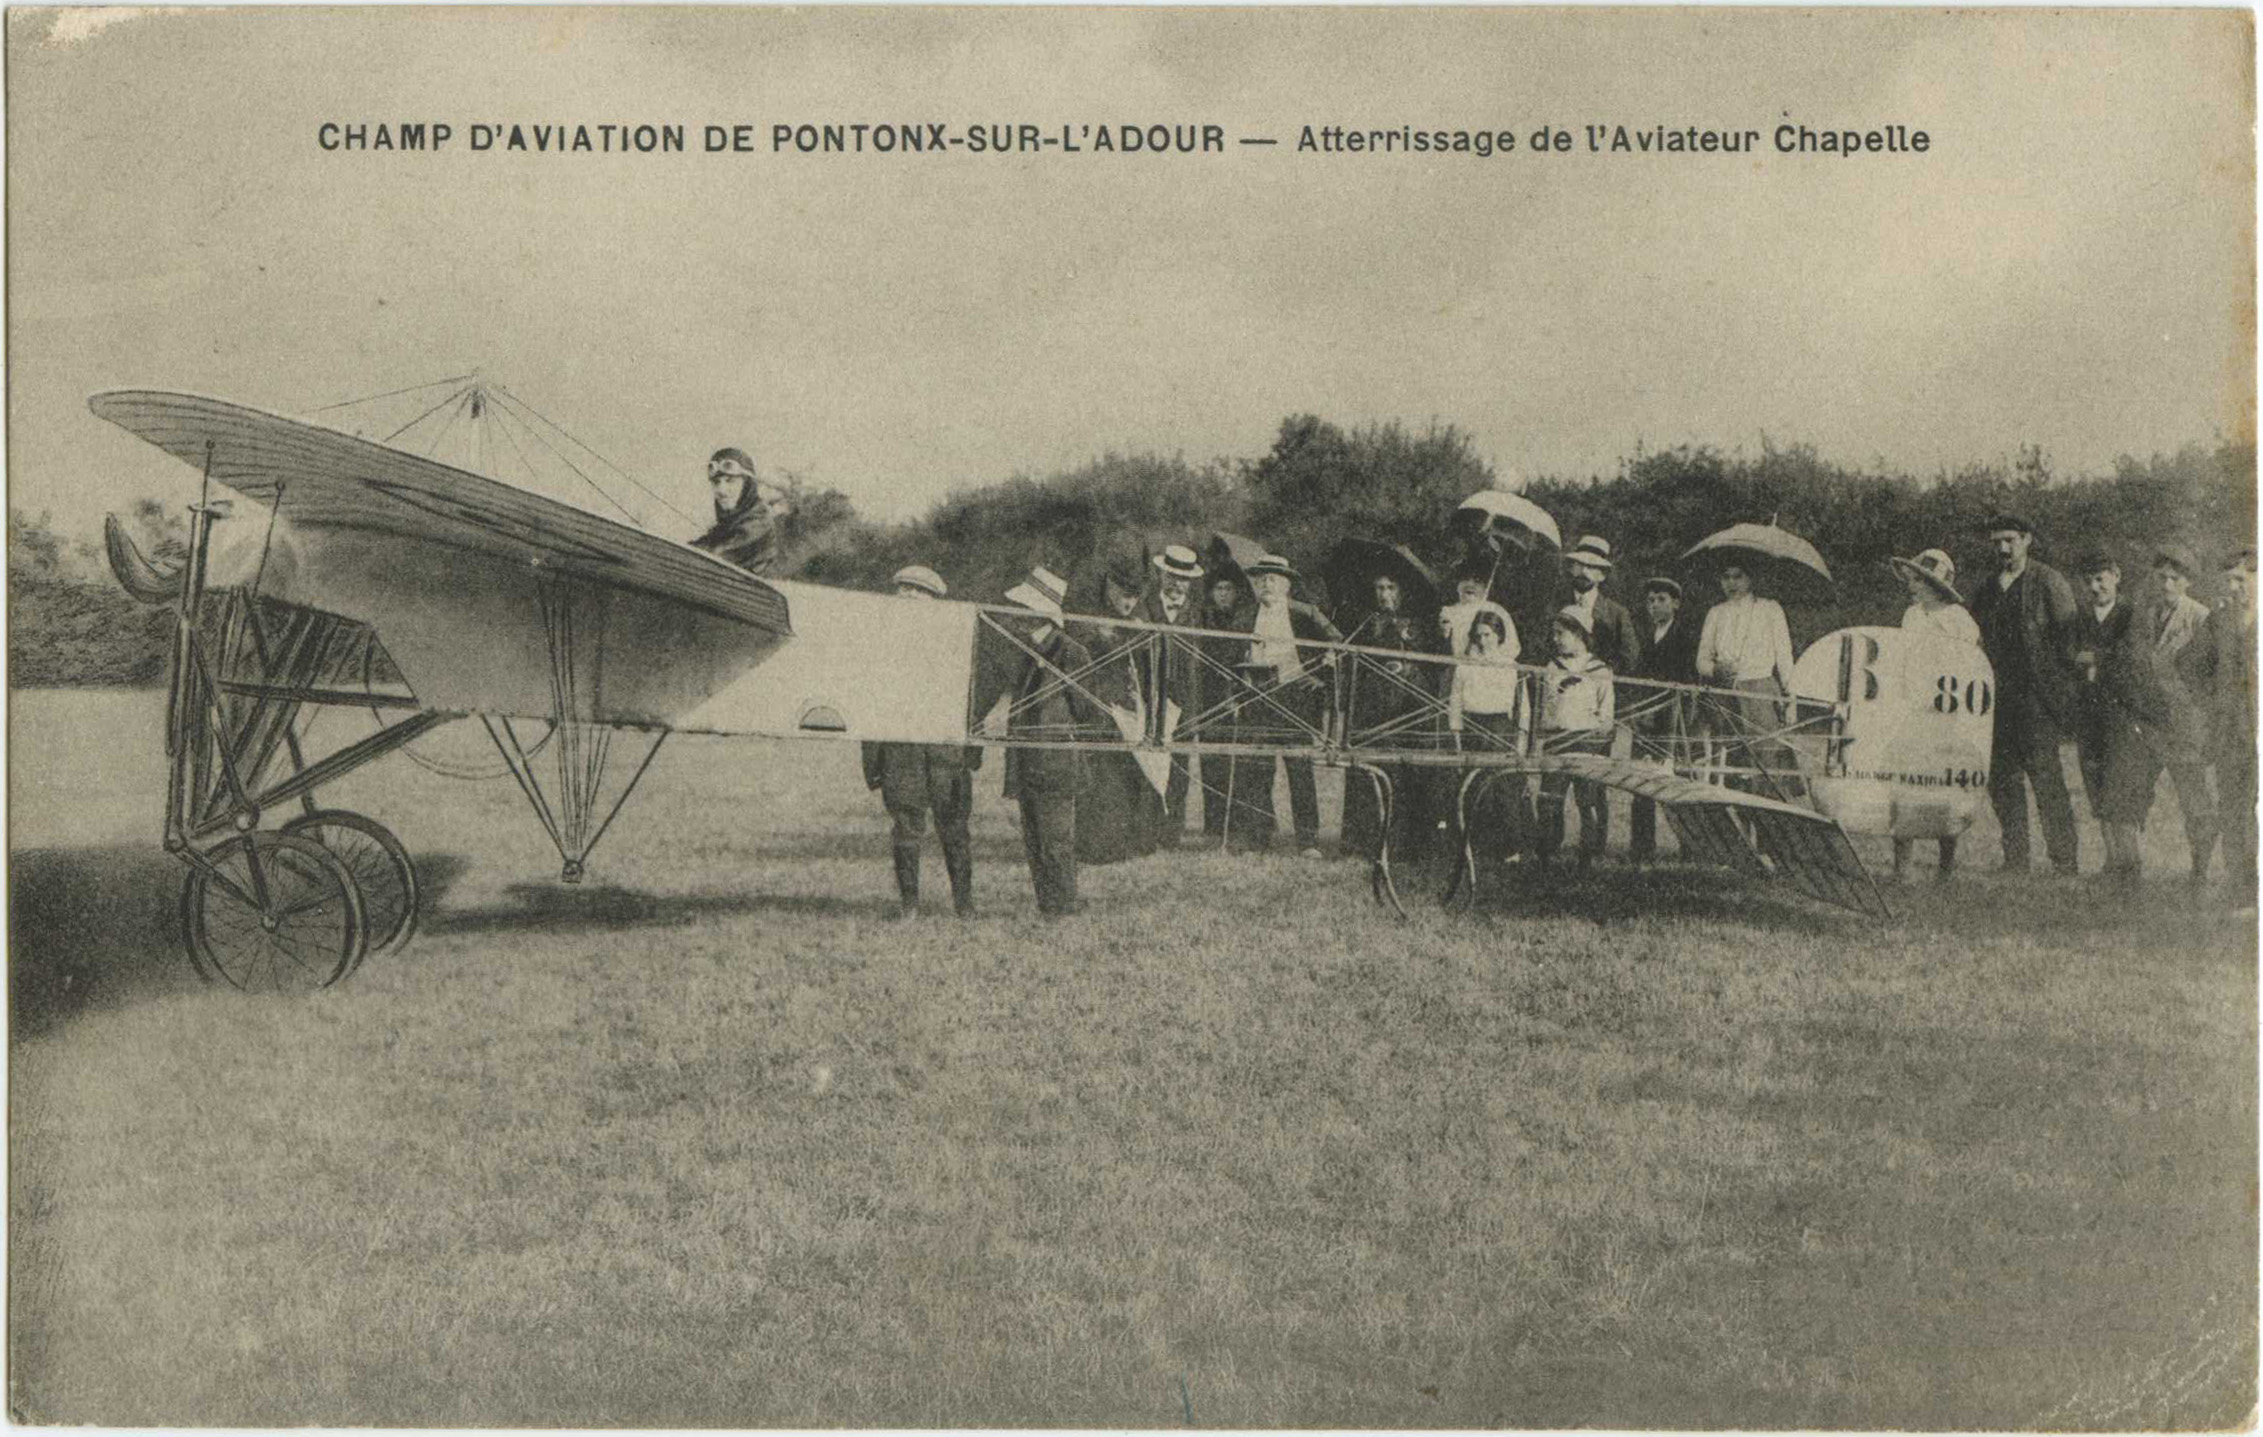 Pontonx-sur-l'Adour - CHAMP D'AVIATION DE PONTONX-SUR-L'ADOUR - Atterrissage de l'Aviateur Chapelle